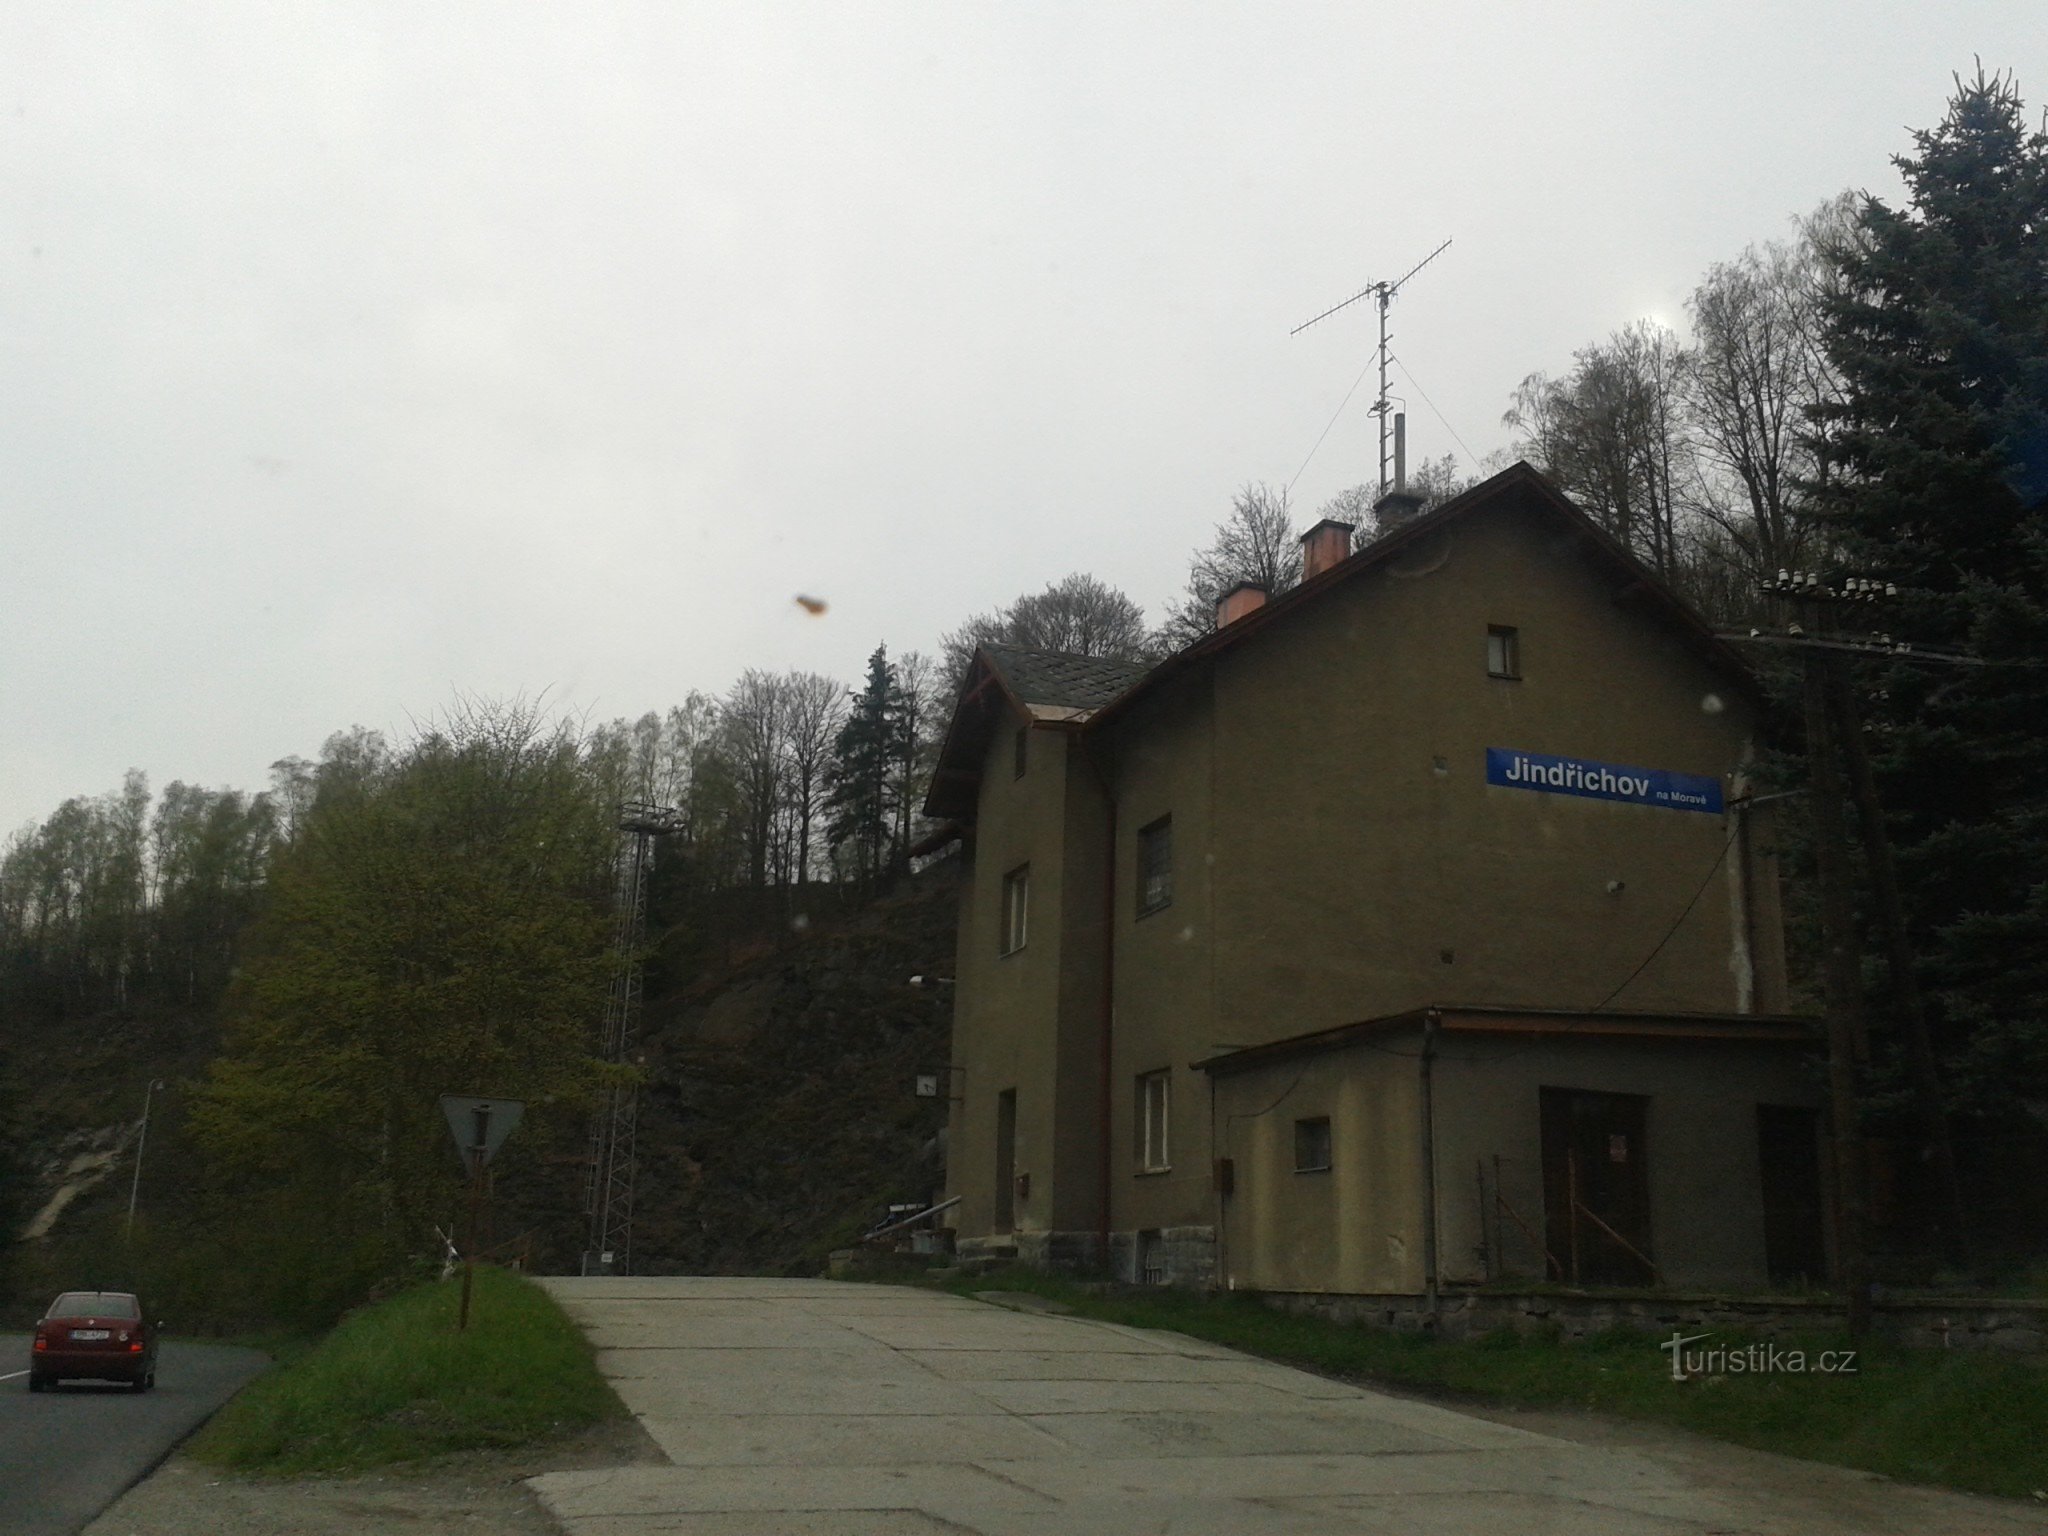 Їндржихов у Моравії - колишня паперова фабрика та залізнична станція, де час зупинився, район Шумперк